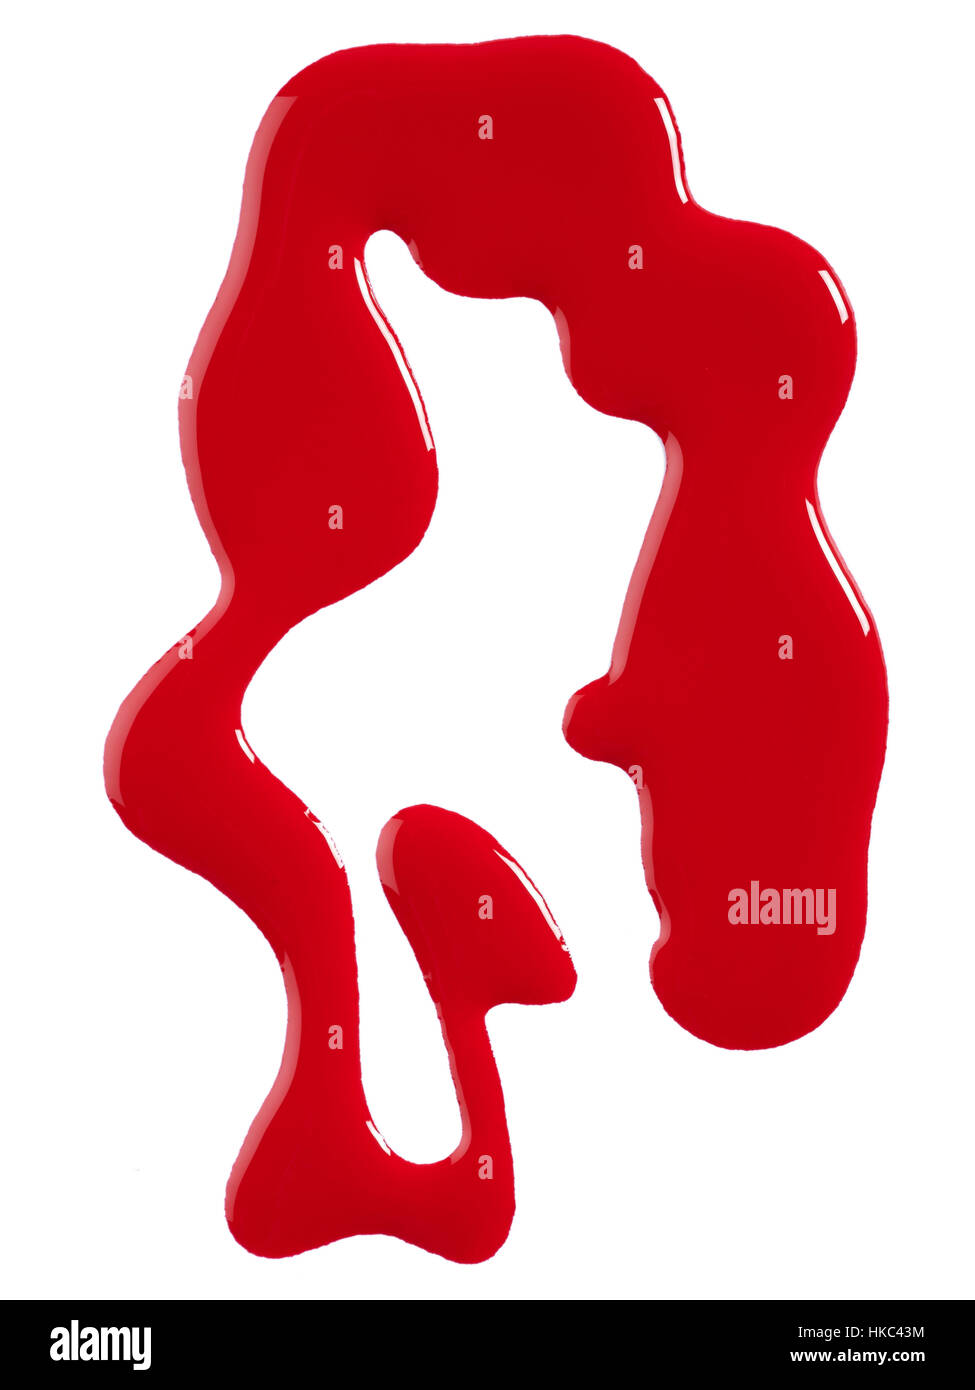 Una bellezza immagine ritagliata di un campione di rosso smalto o vernice. Foto Stock